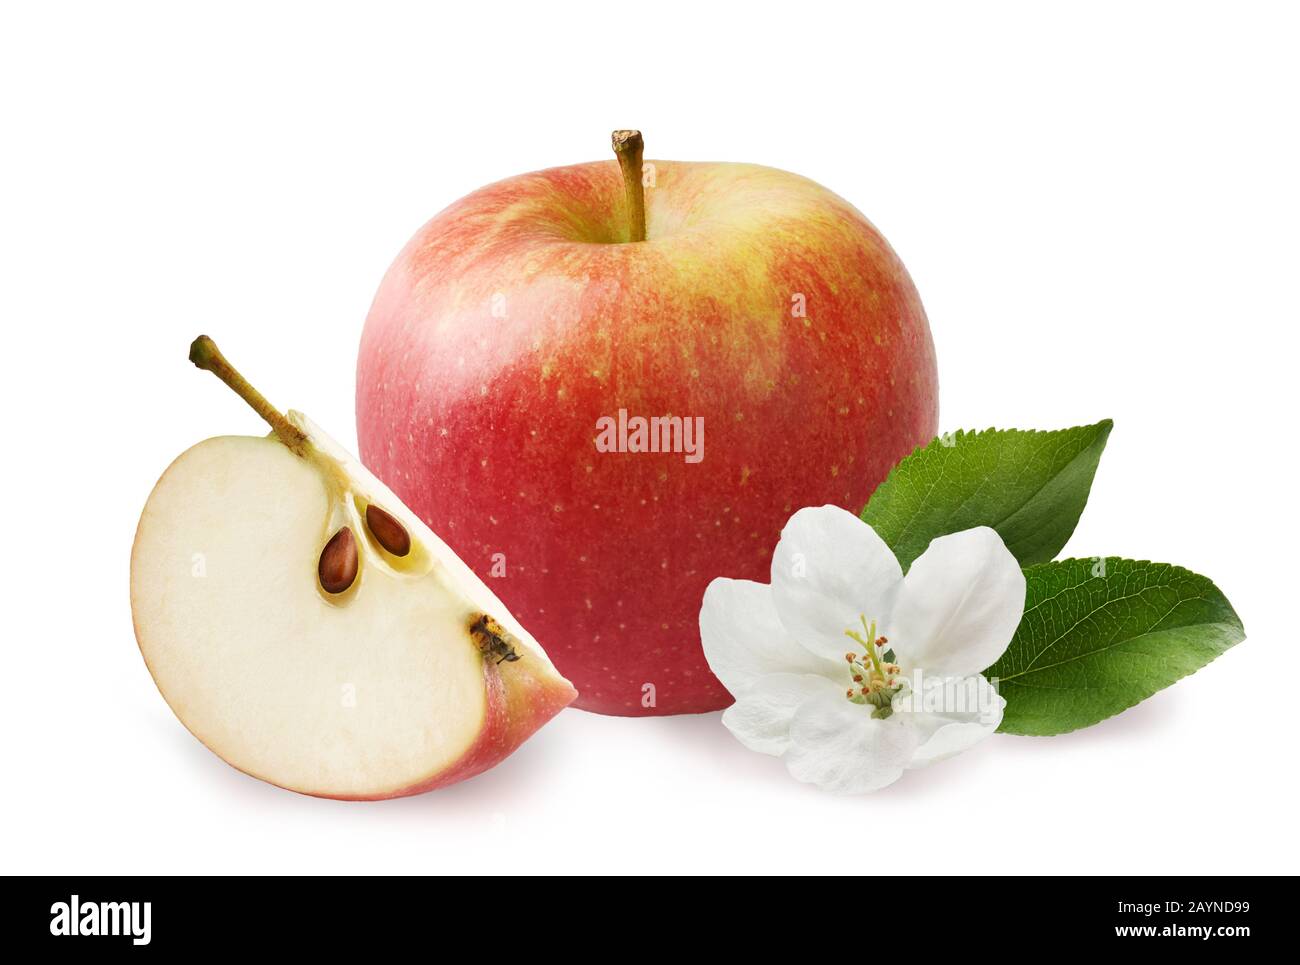 Apfel mit Scheiben- und apfelblättern, apfelblume isoliert auf weißem Grund. Stockfoto